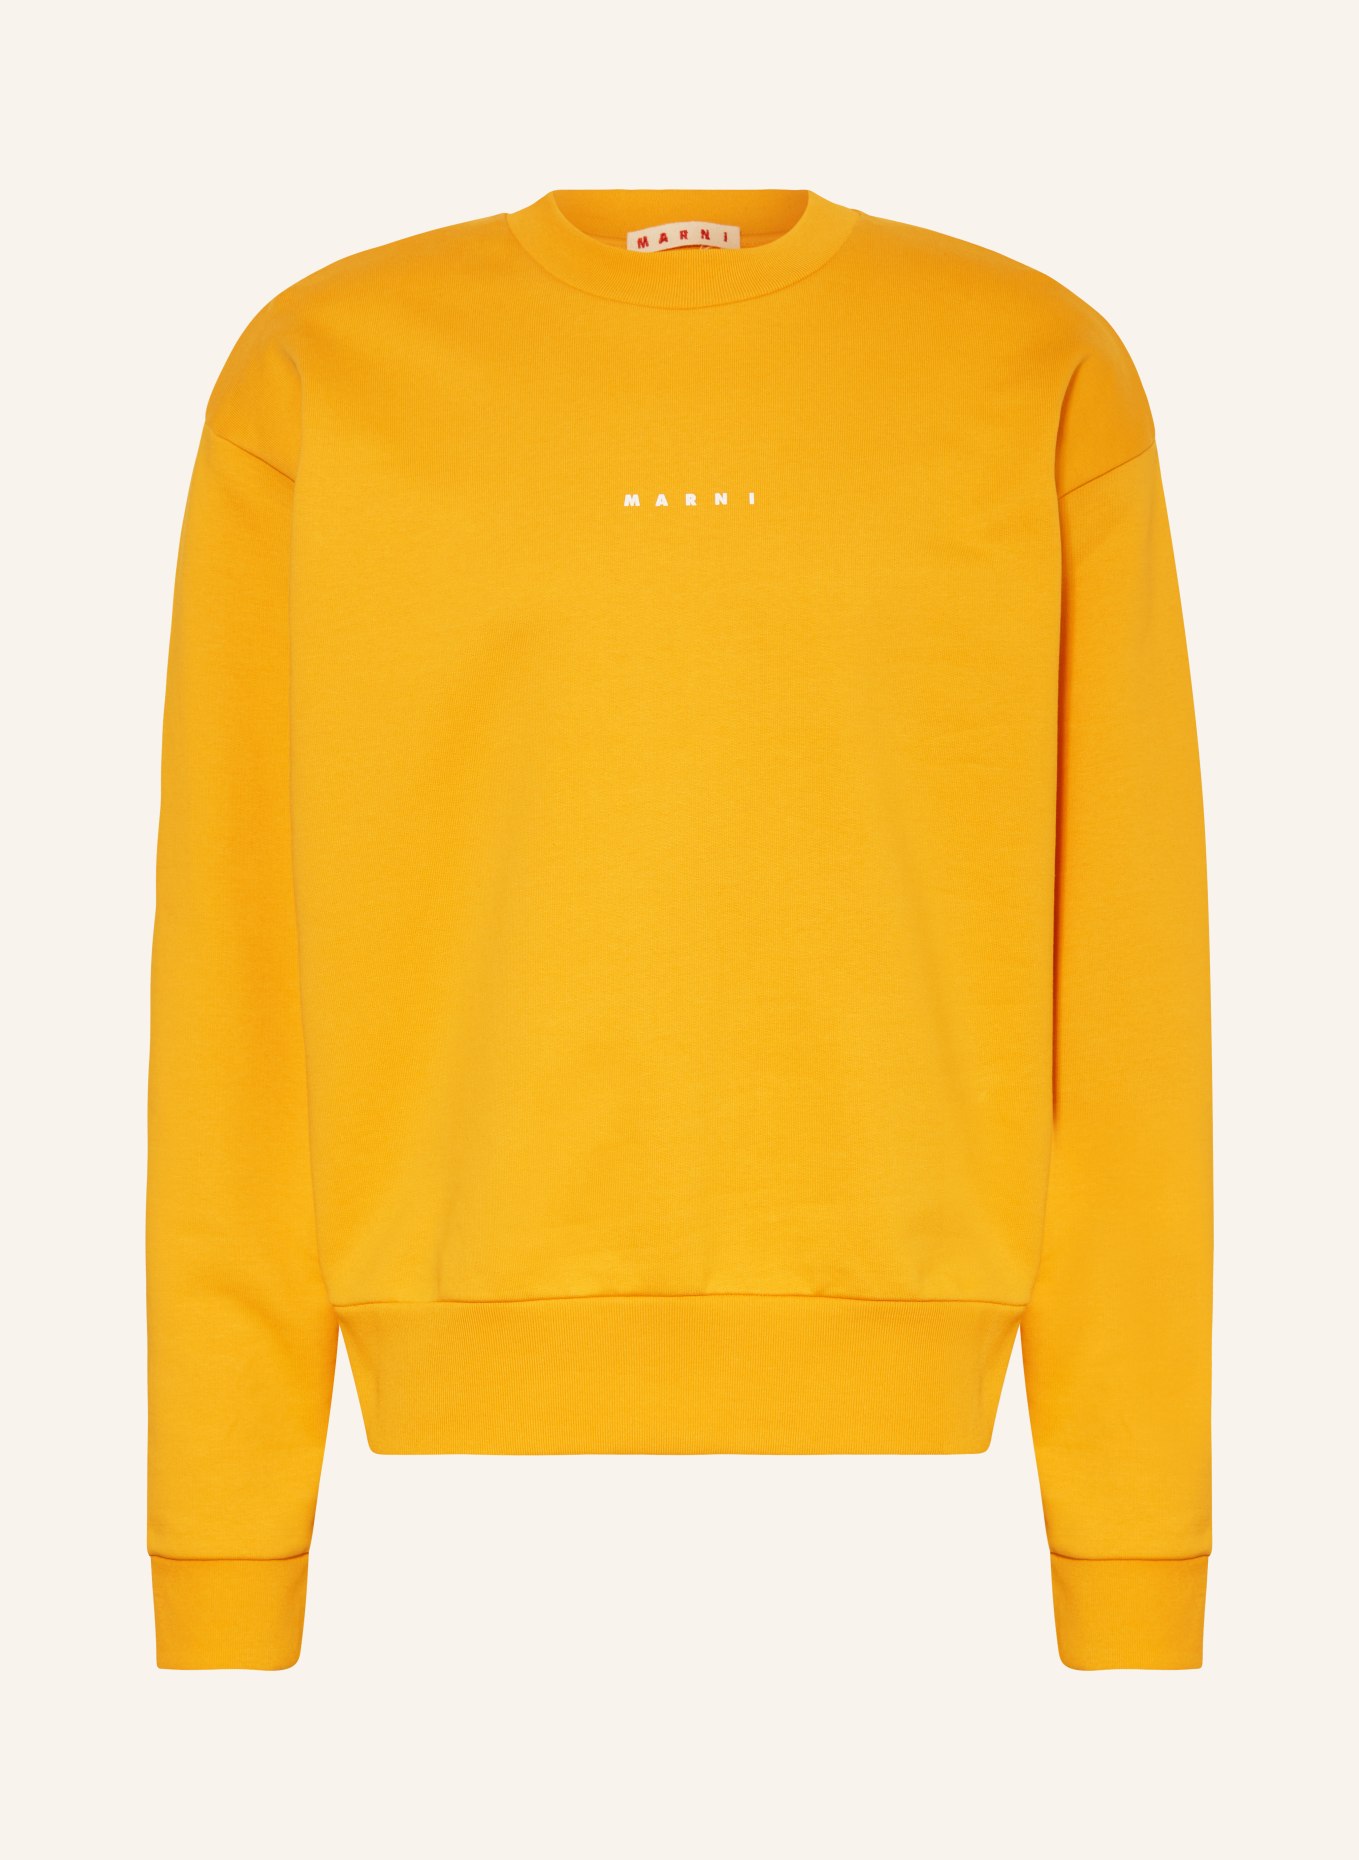 MARNI Sweatshirt, Farbe: HELLORANGE (Bild 1)